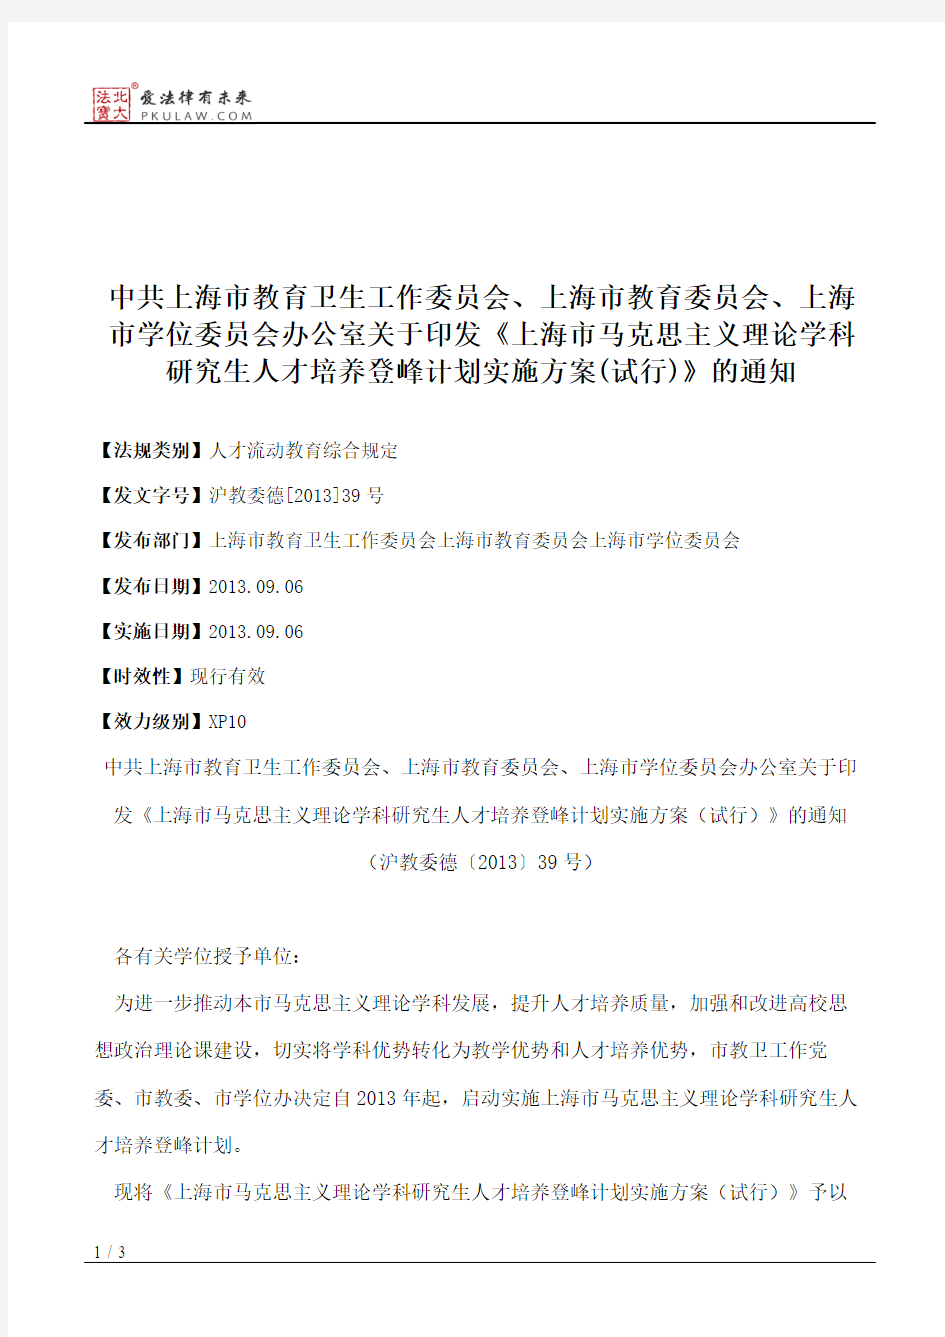 中共上海市教育卫生工作委员会、上海市教育委员会、上海市学位委